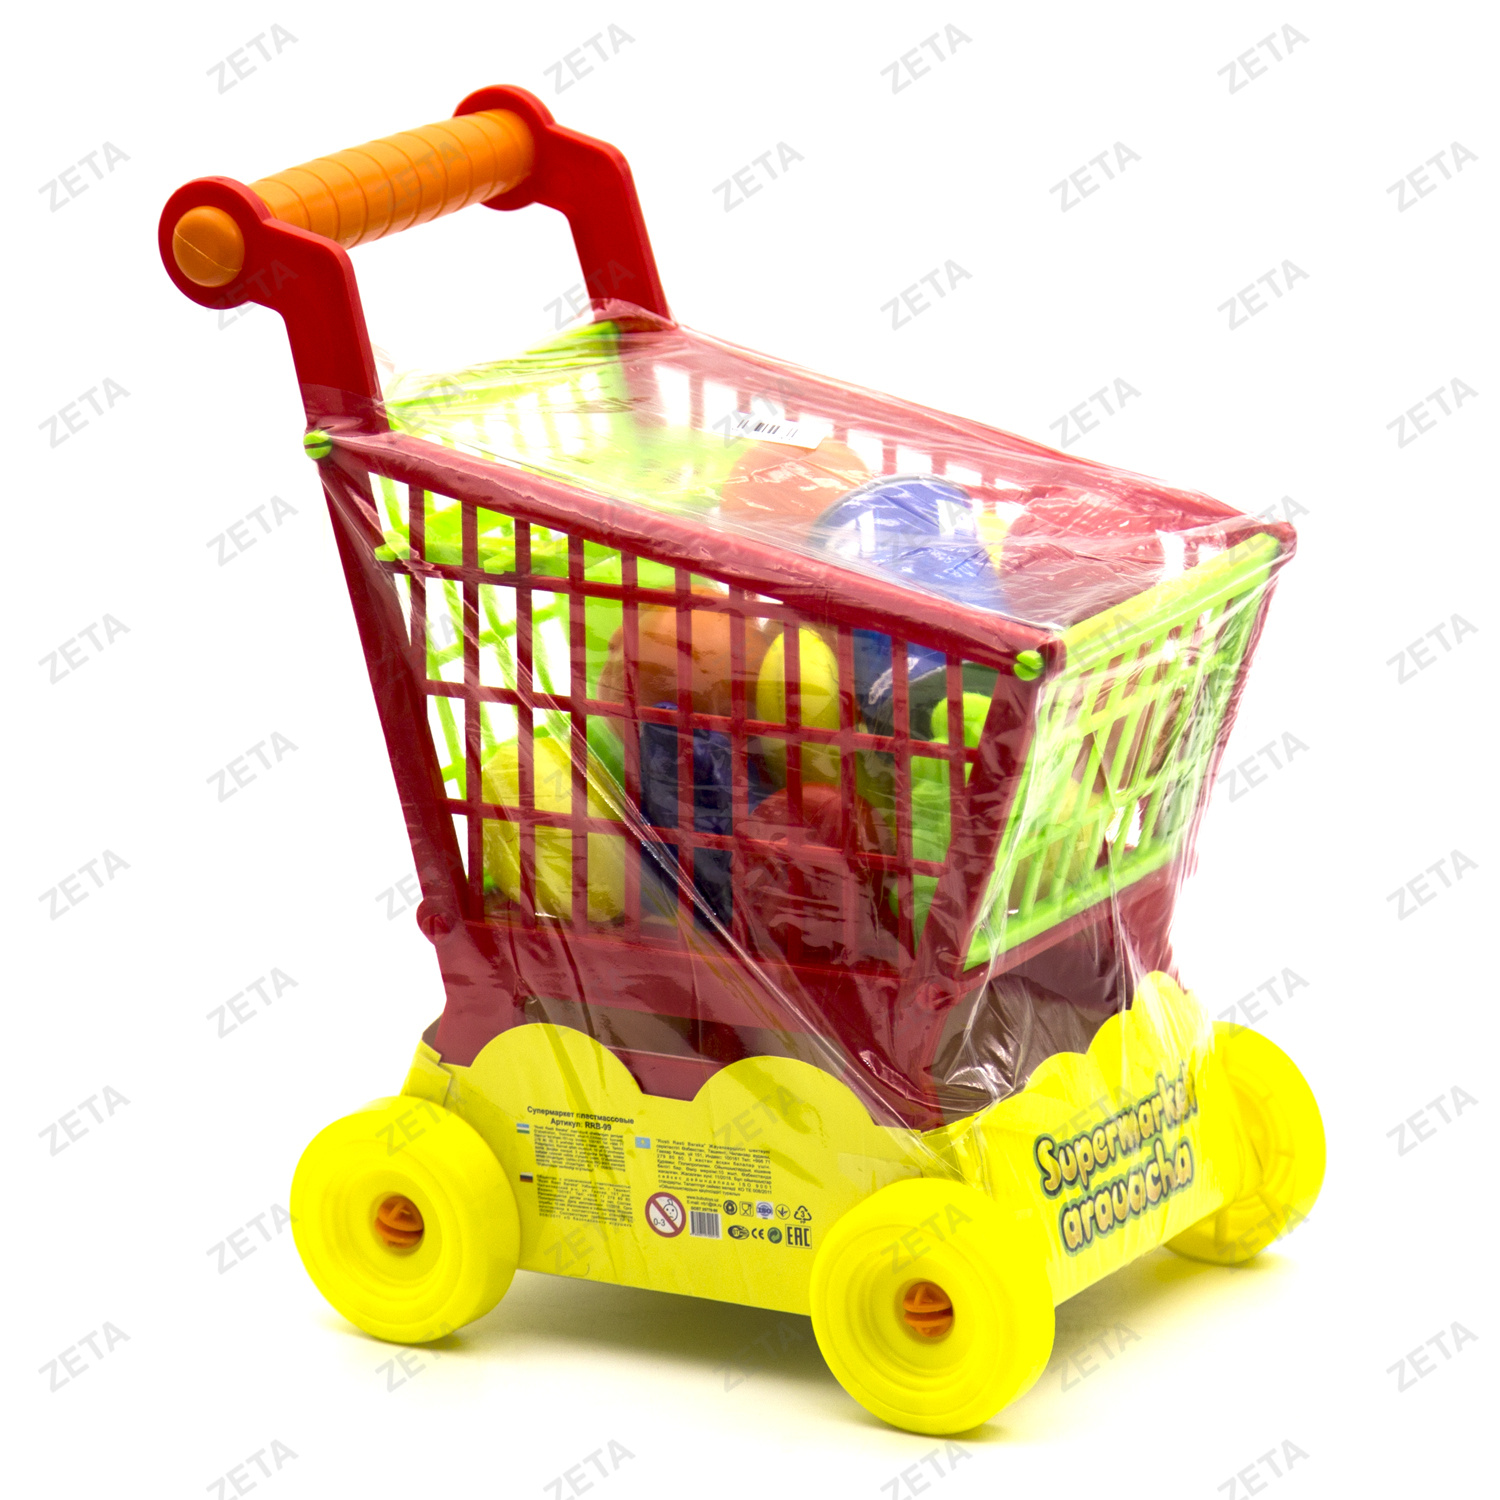 Игрушка "Супермаркет" RRB-99 - изображение 1